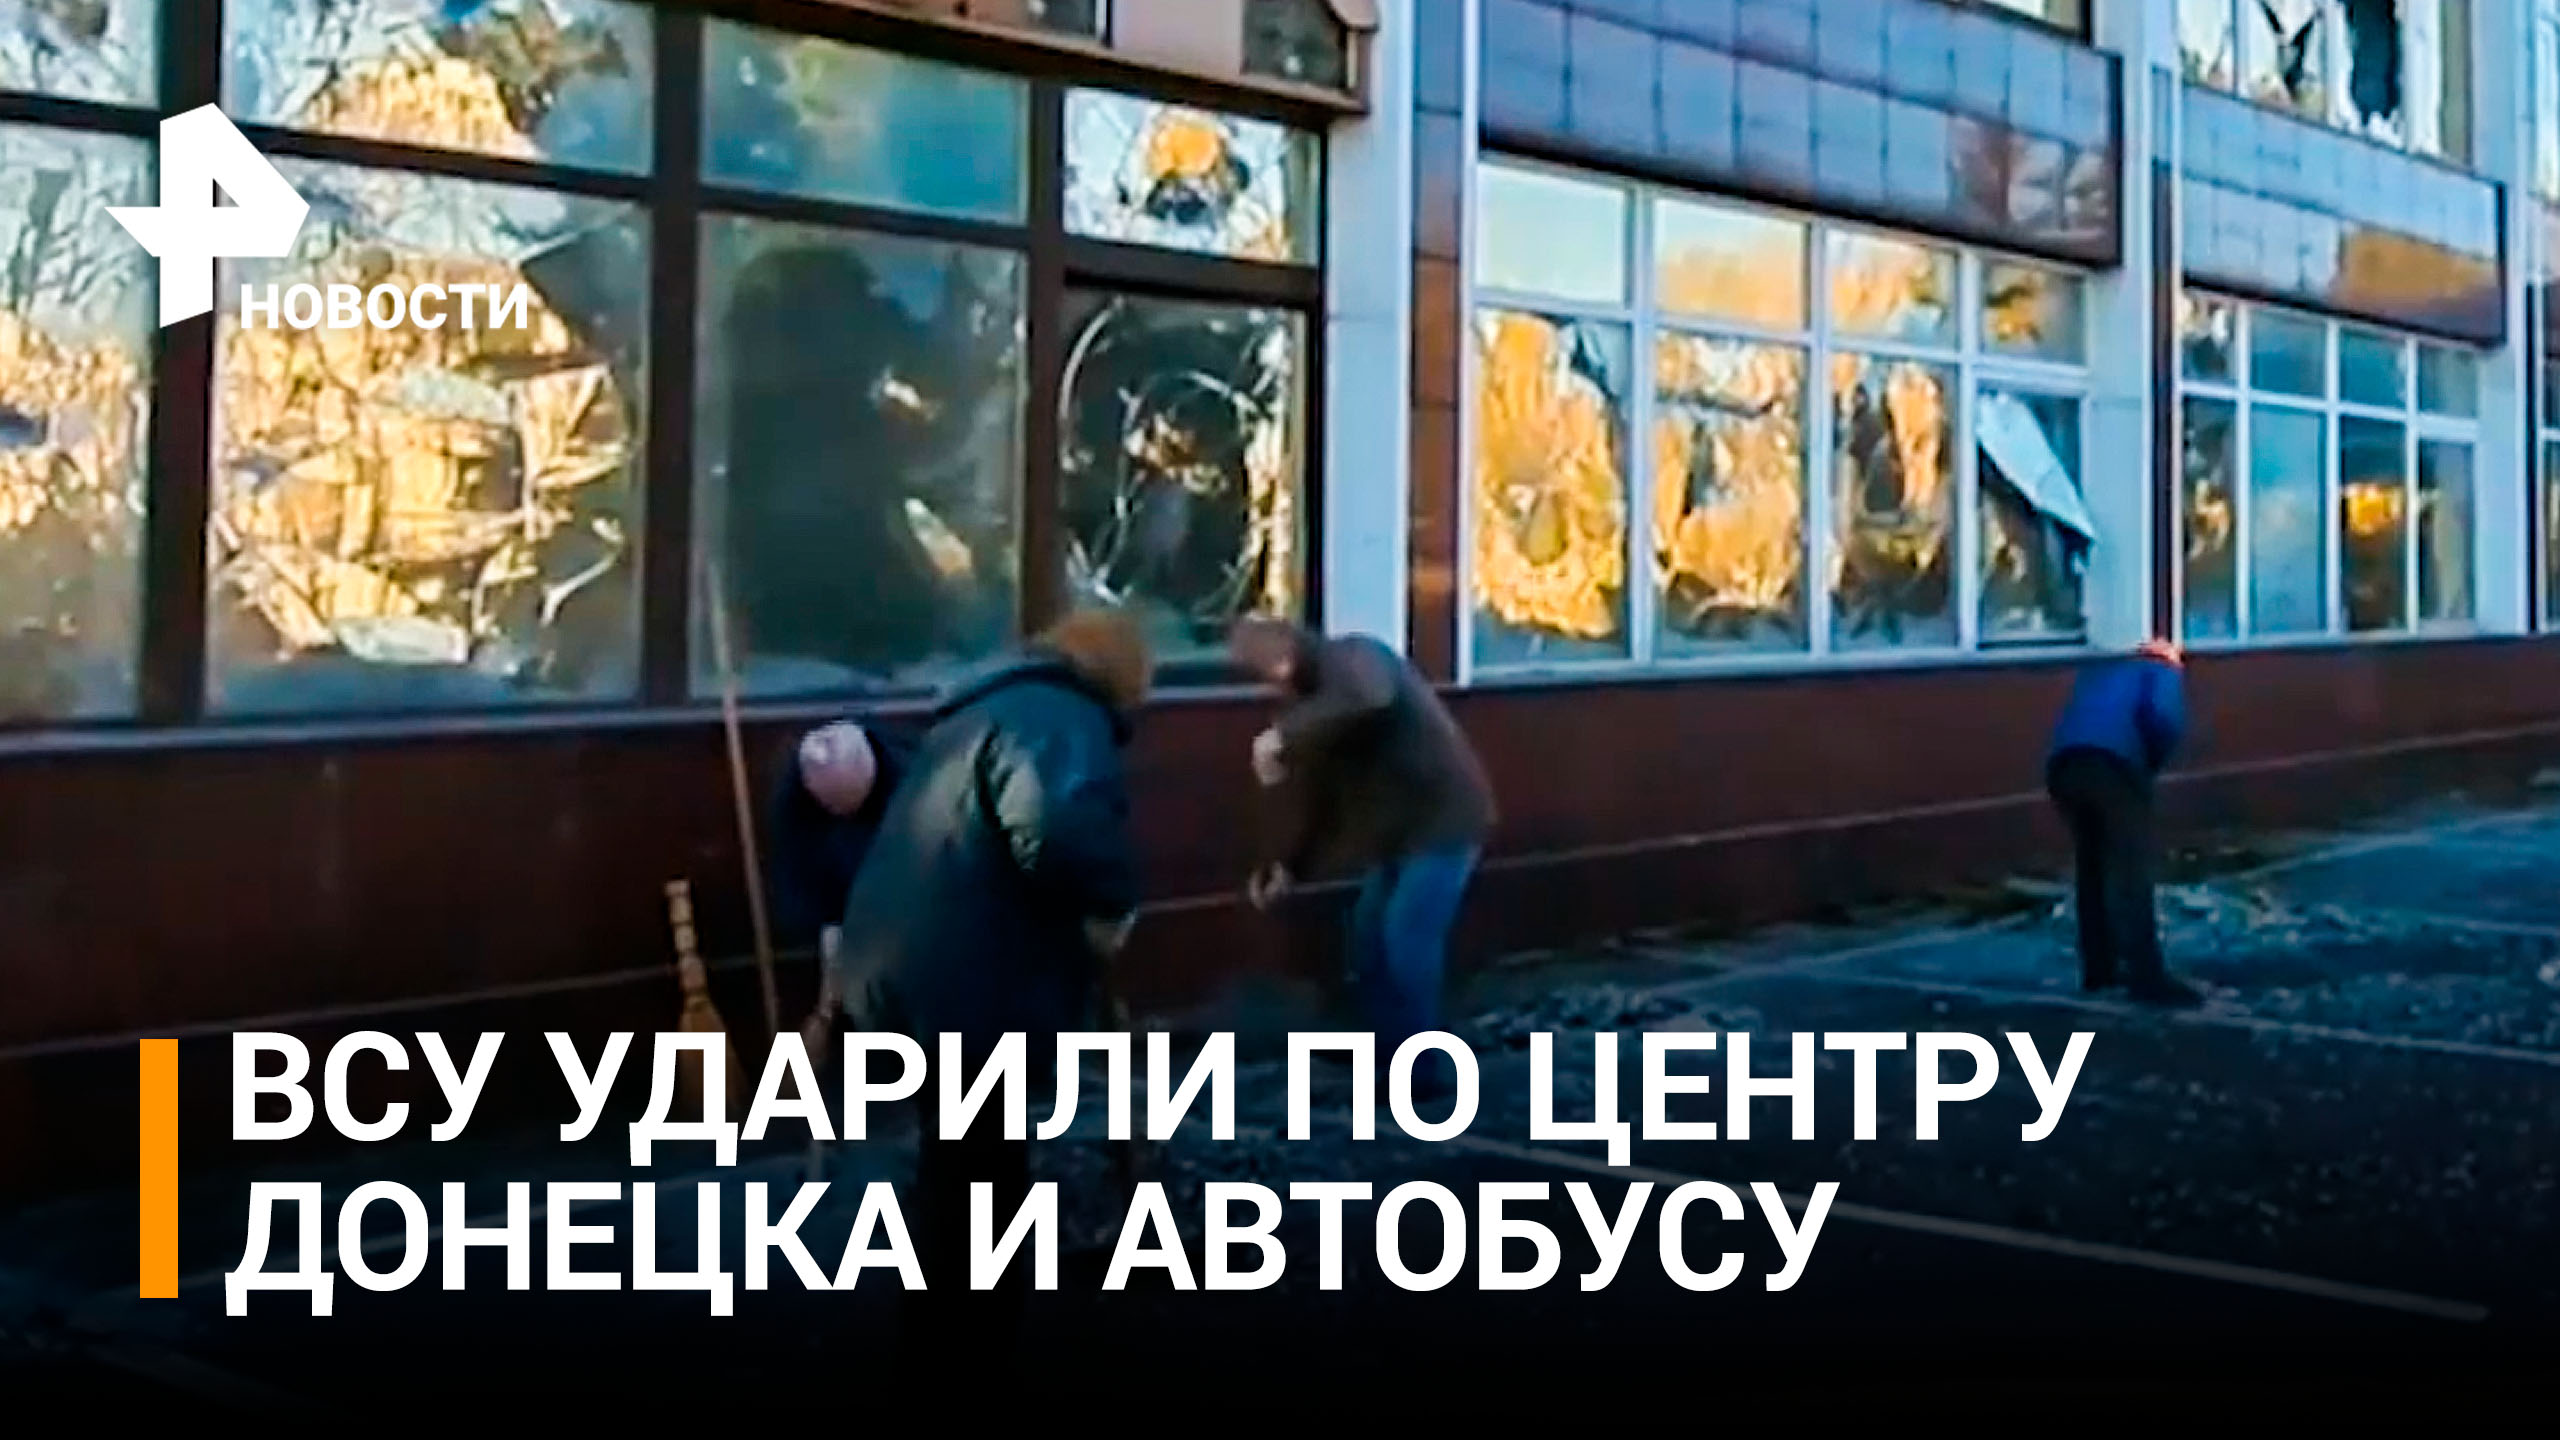 Кадры последствий удара ВСУ по центру Донецка и автобусу с пассажирами / РЕН Новости